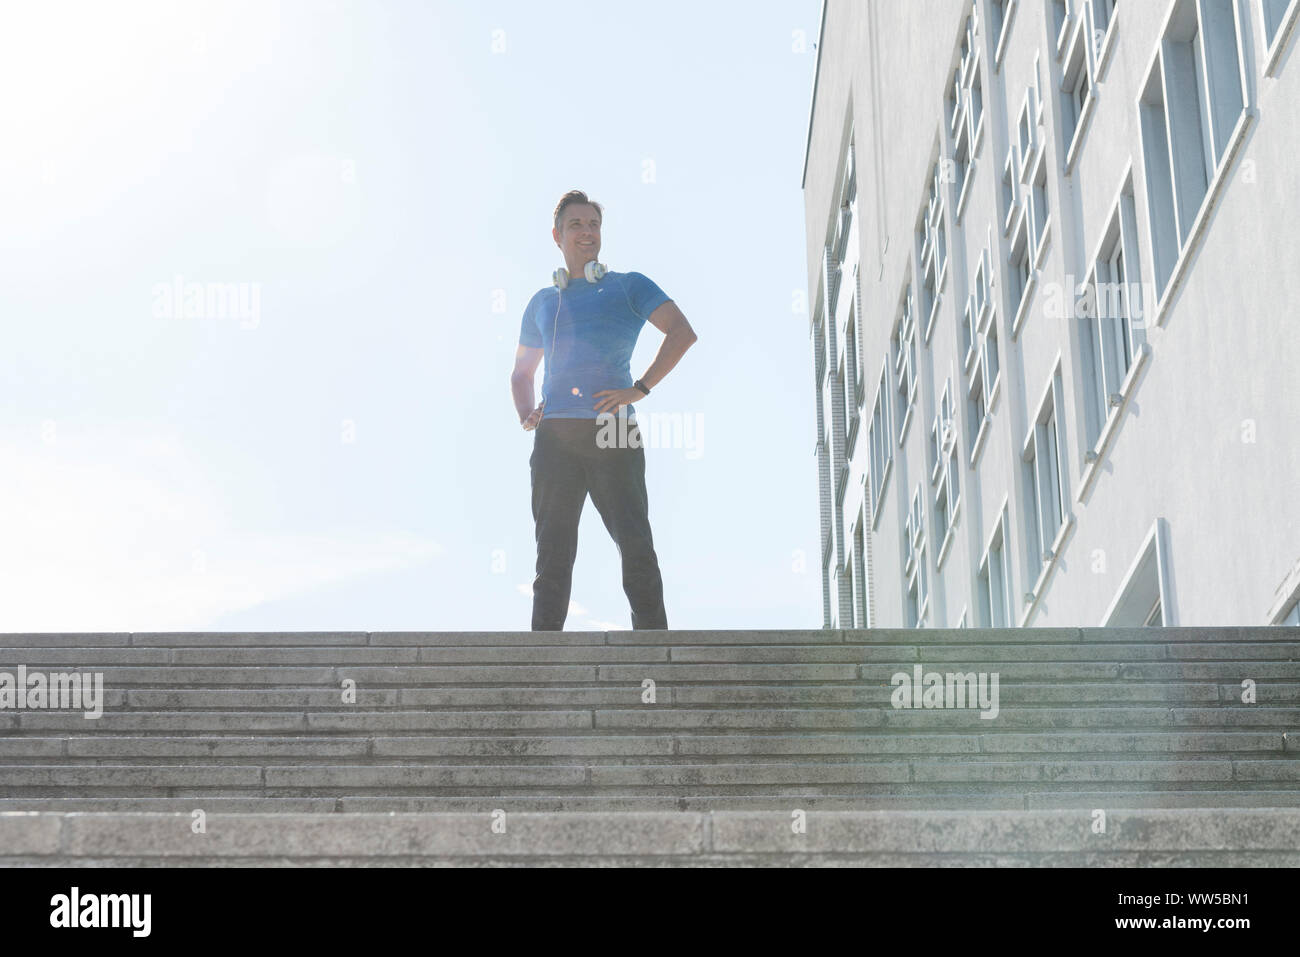 Mann im Sport Kleidung auf der Treppe außerhalb stehend Stockfoto